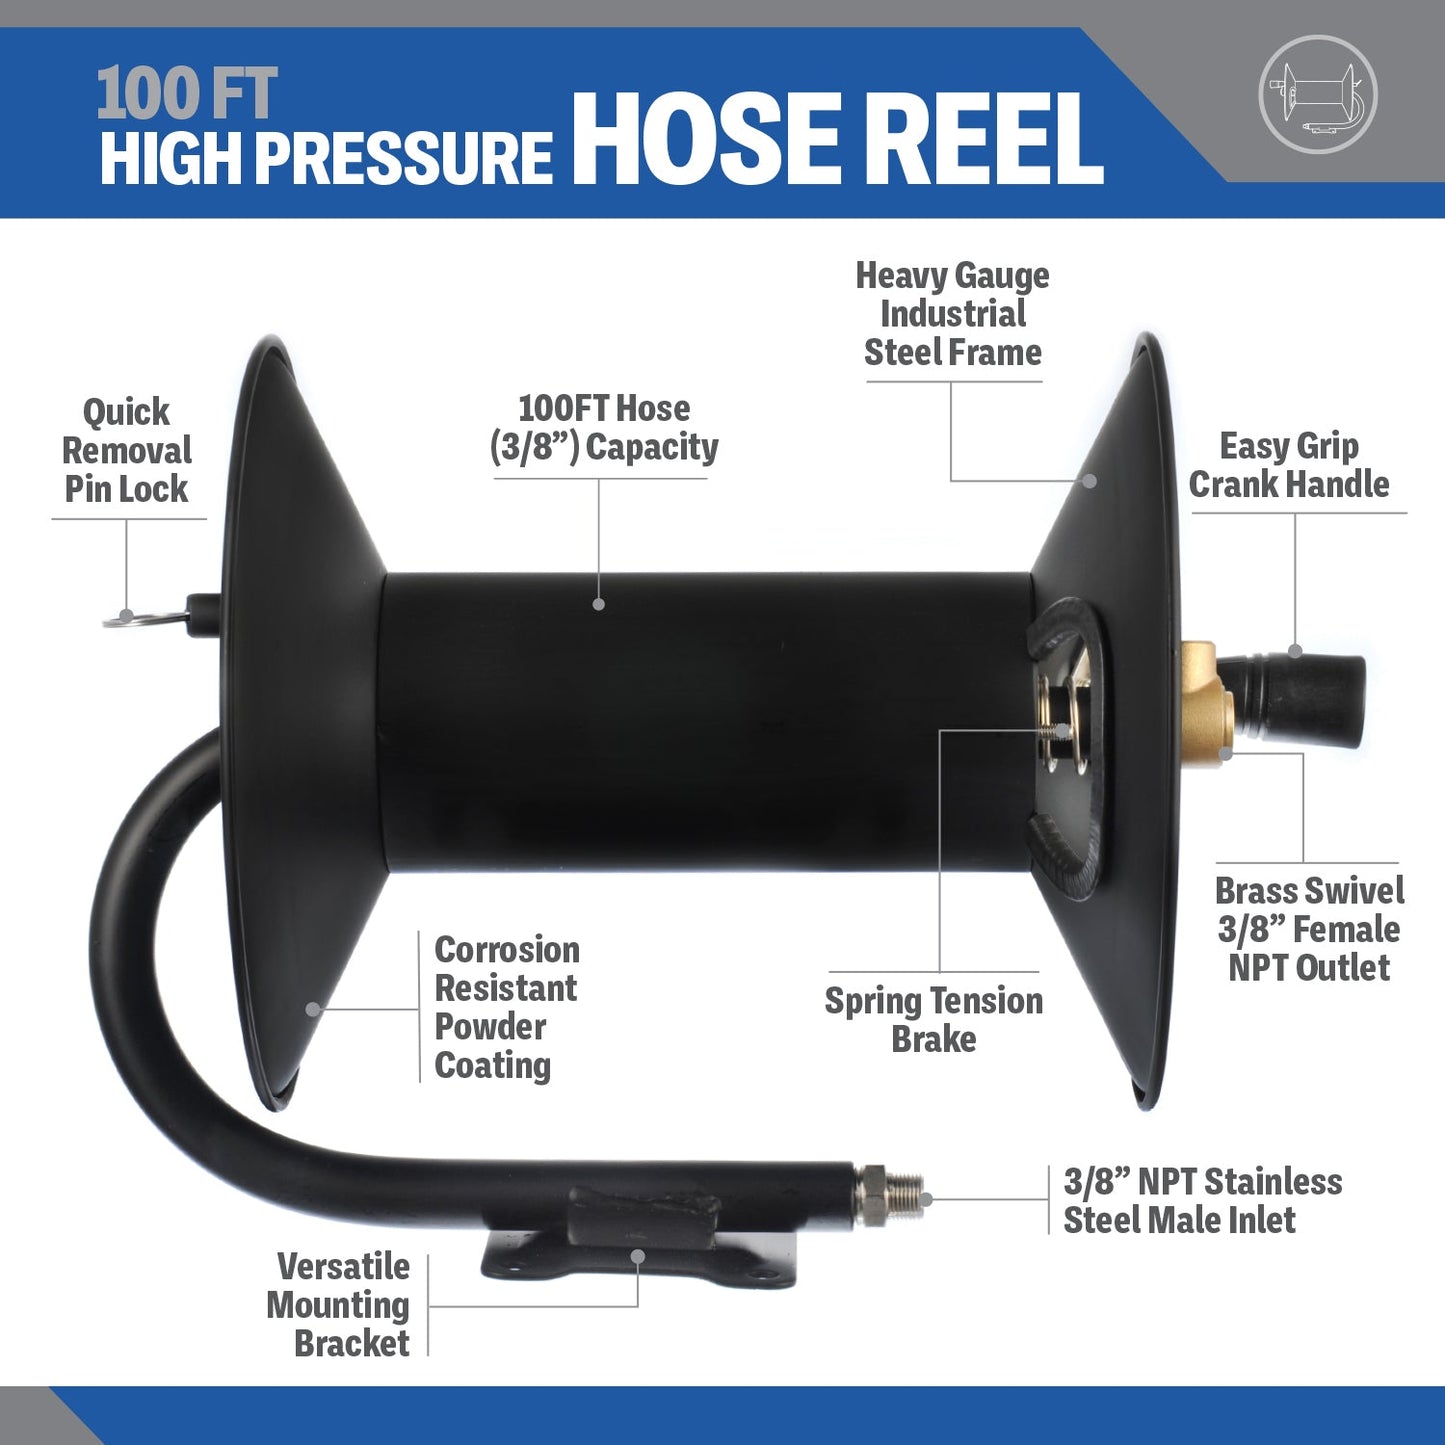 Pressure Washer 100 FT Hose Reel | High Pressure Commercial Grade